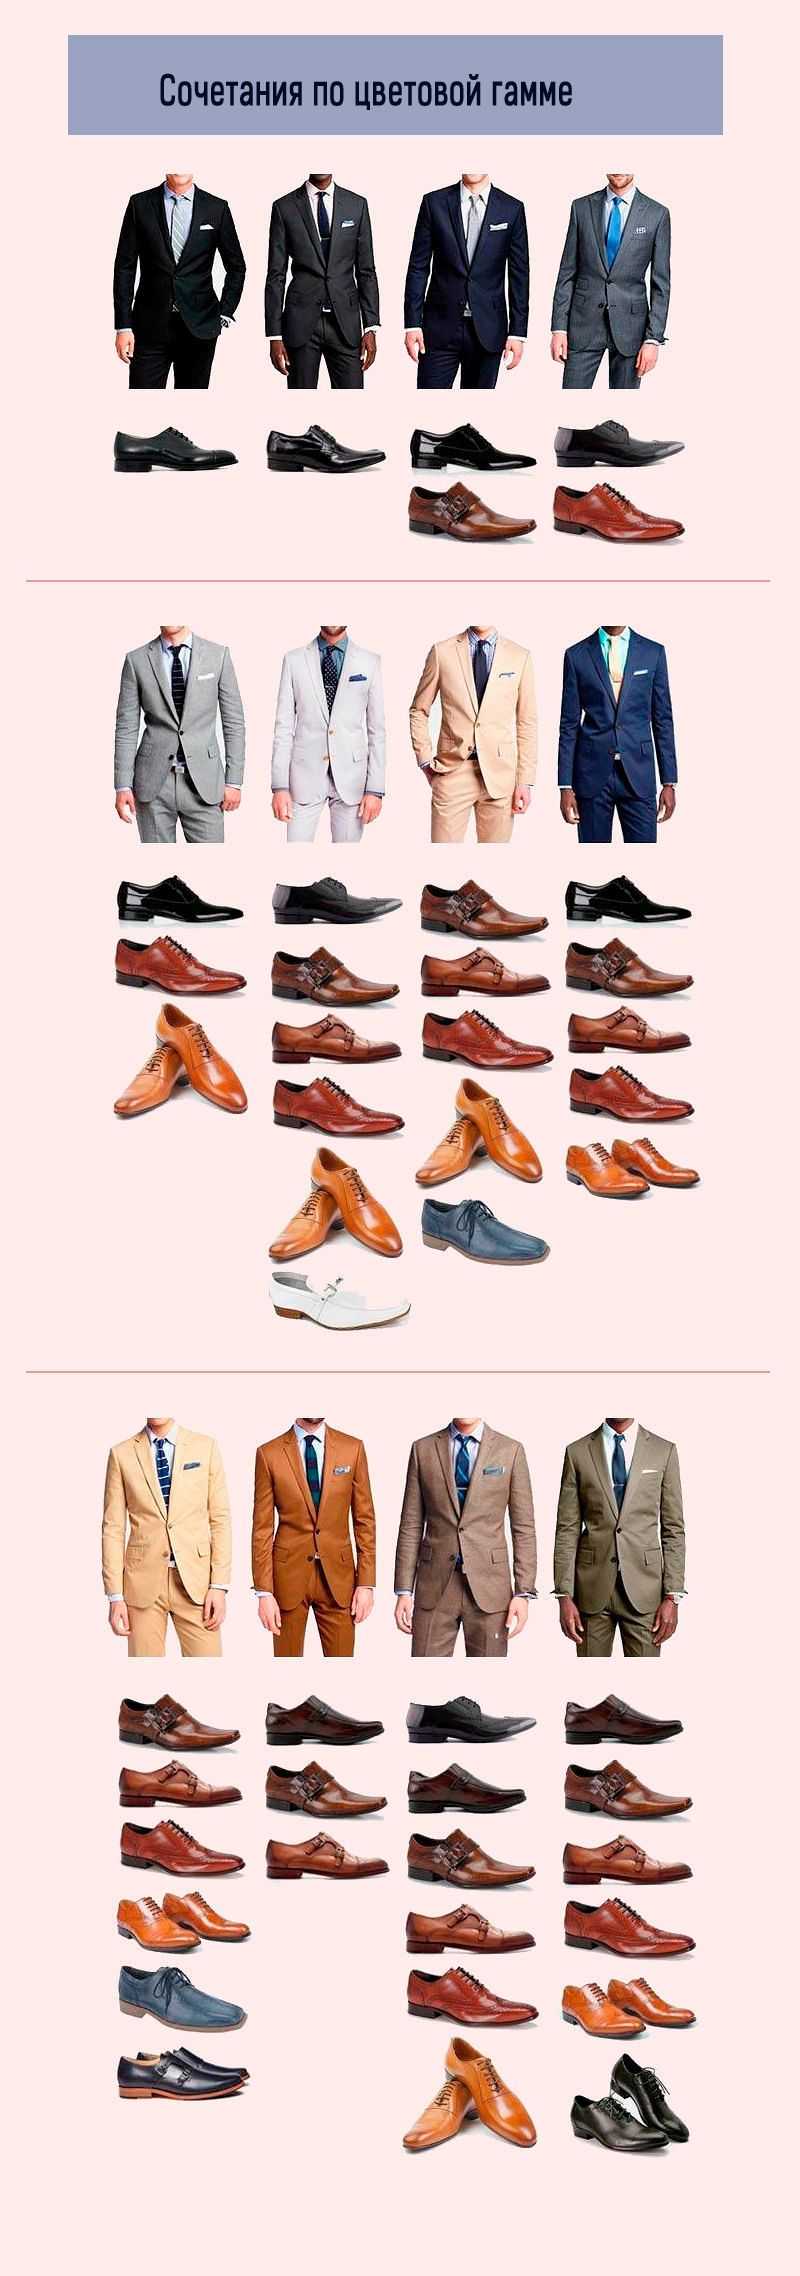 Свадебные туфли – приметы, соблюдаемые в [2019], о выборе обуви жениха & невесты